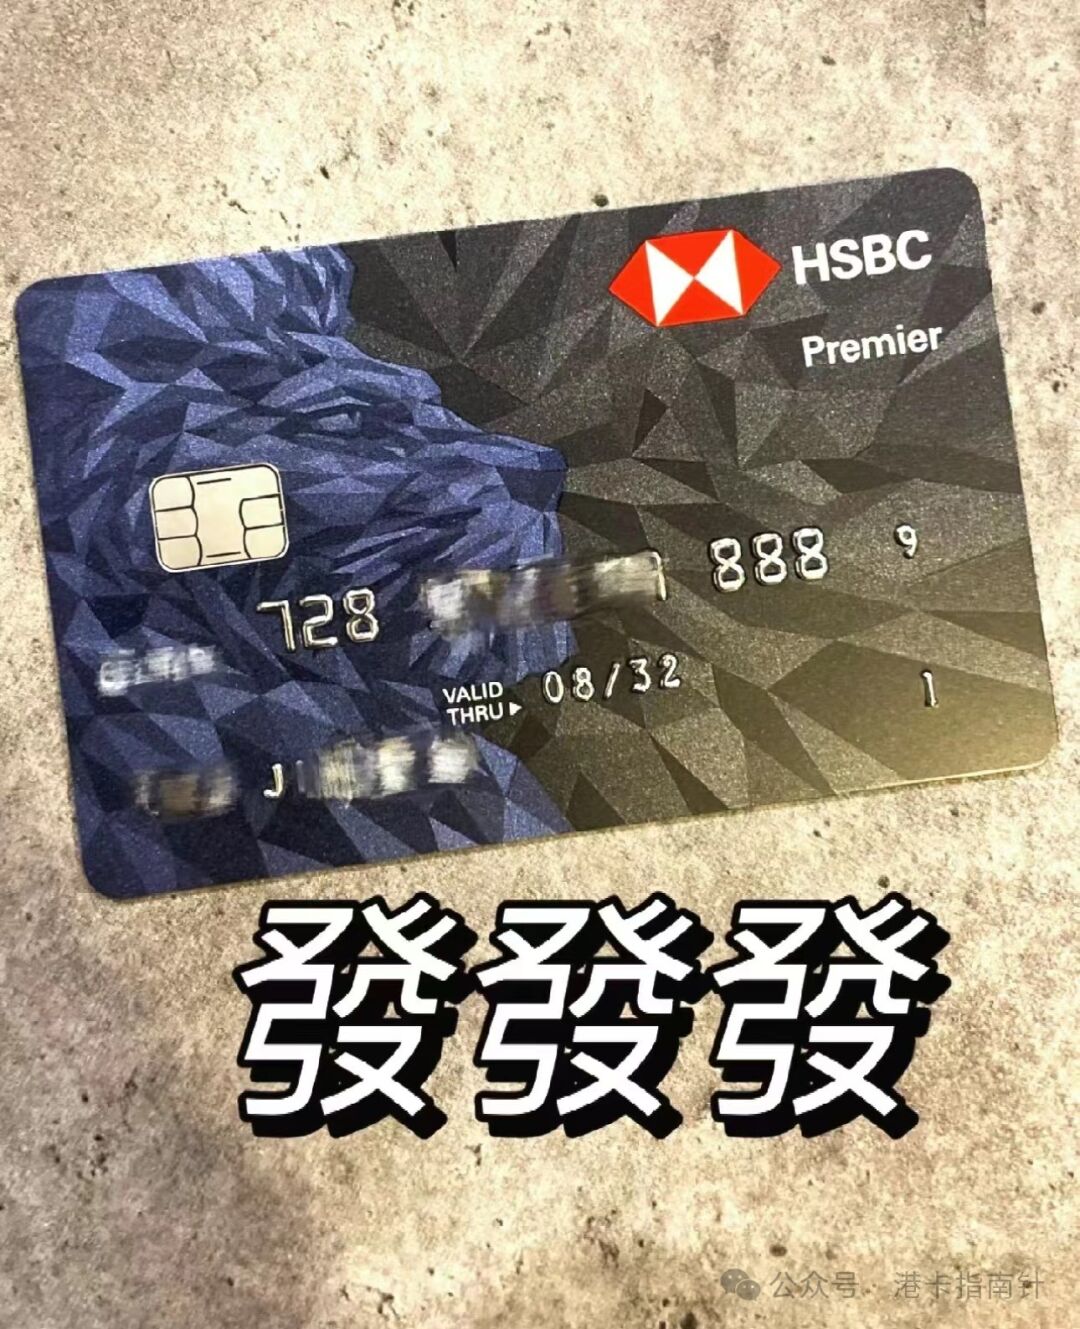 转：1分钟告诉你内地办理香港汇丰银行卡的两种简单方法